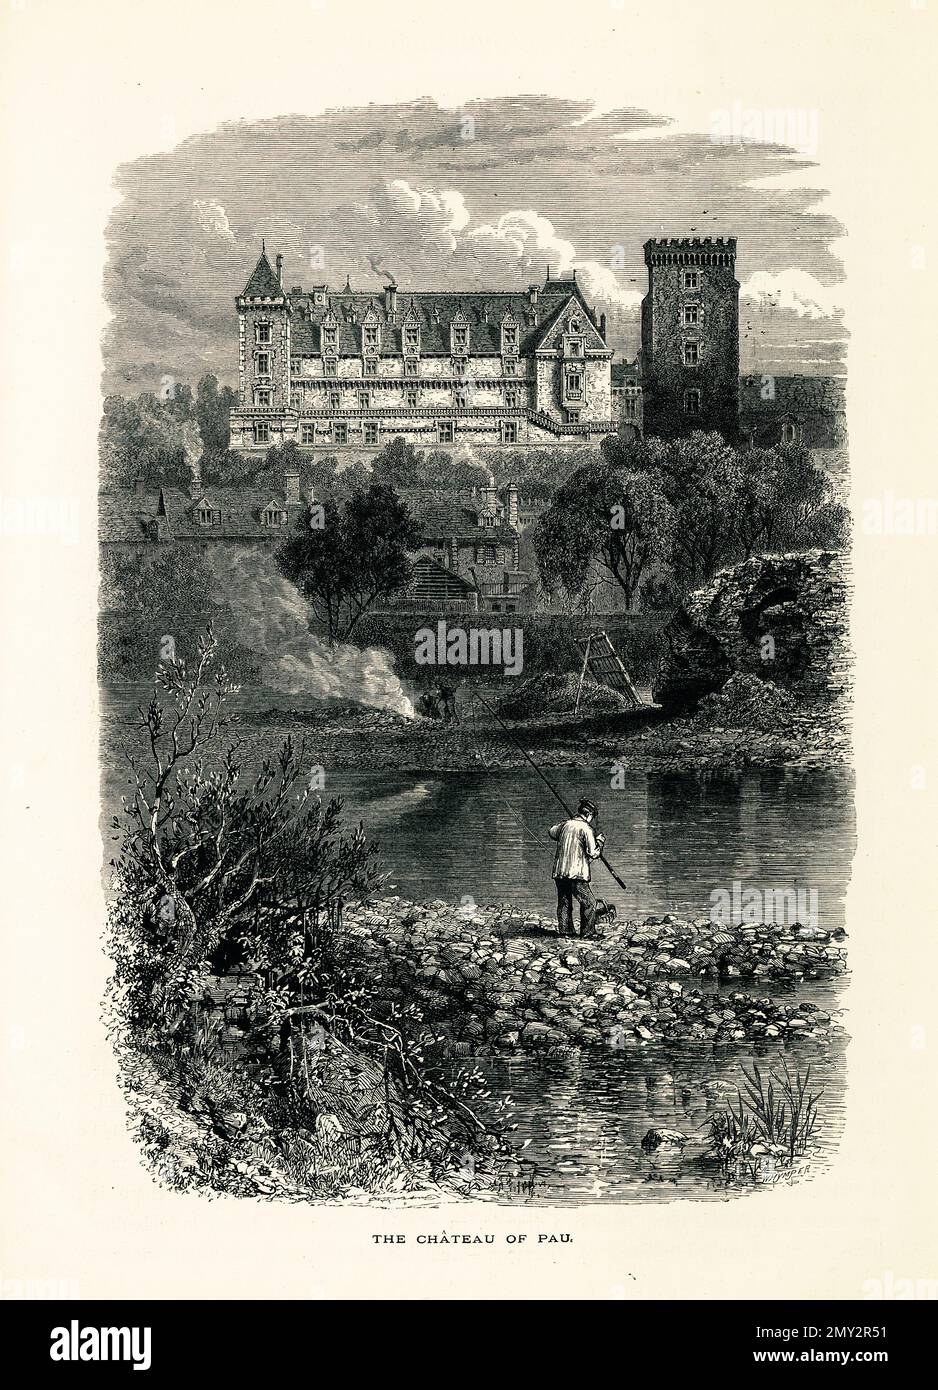 Antica incisione di Chateau de Pau, un castello nel centro di Pau, Francia. Illustrazione pubblicata in picturesque Europe, Vol. III (Cassell & Company, Foto Stock